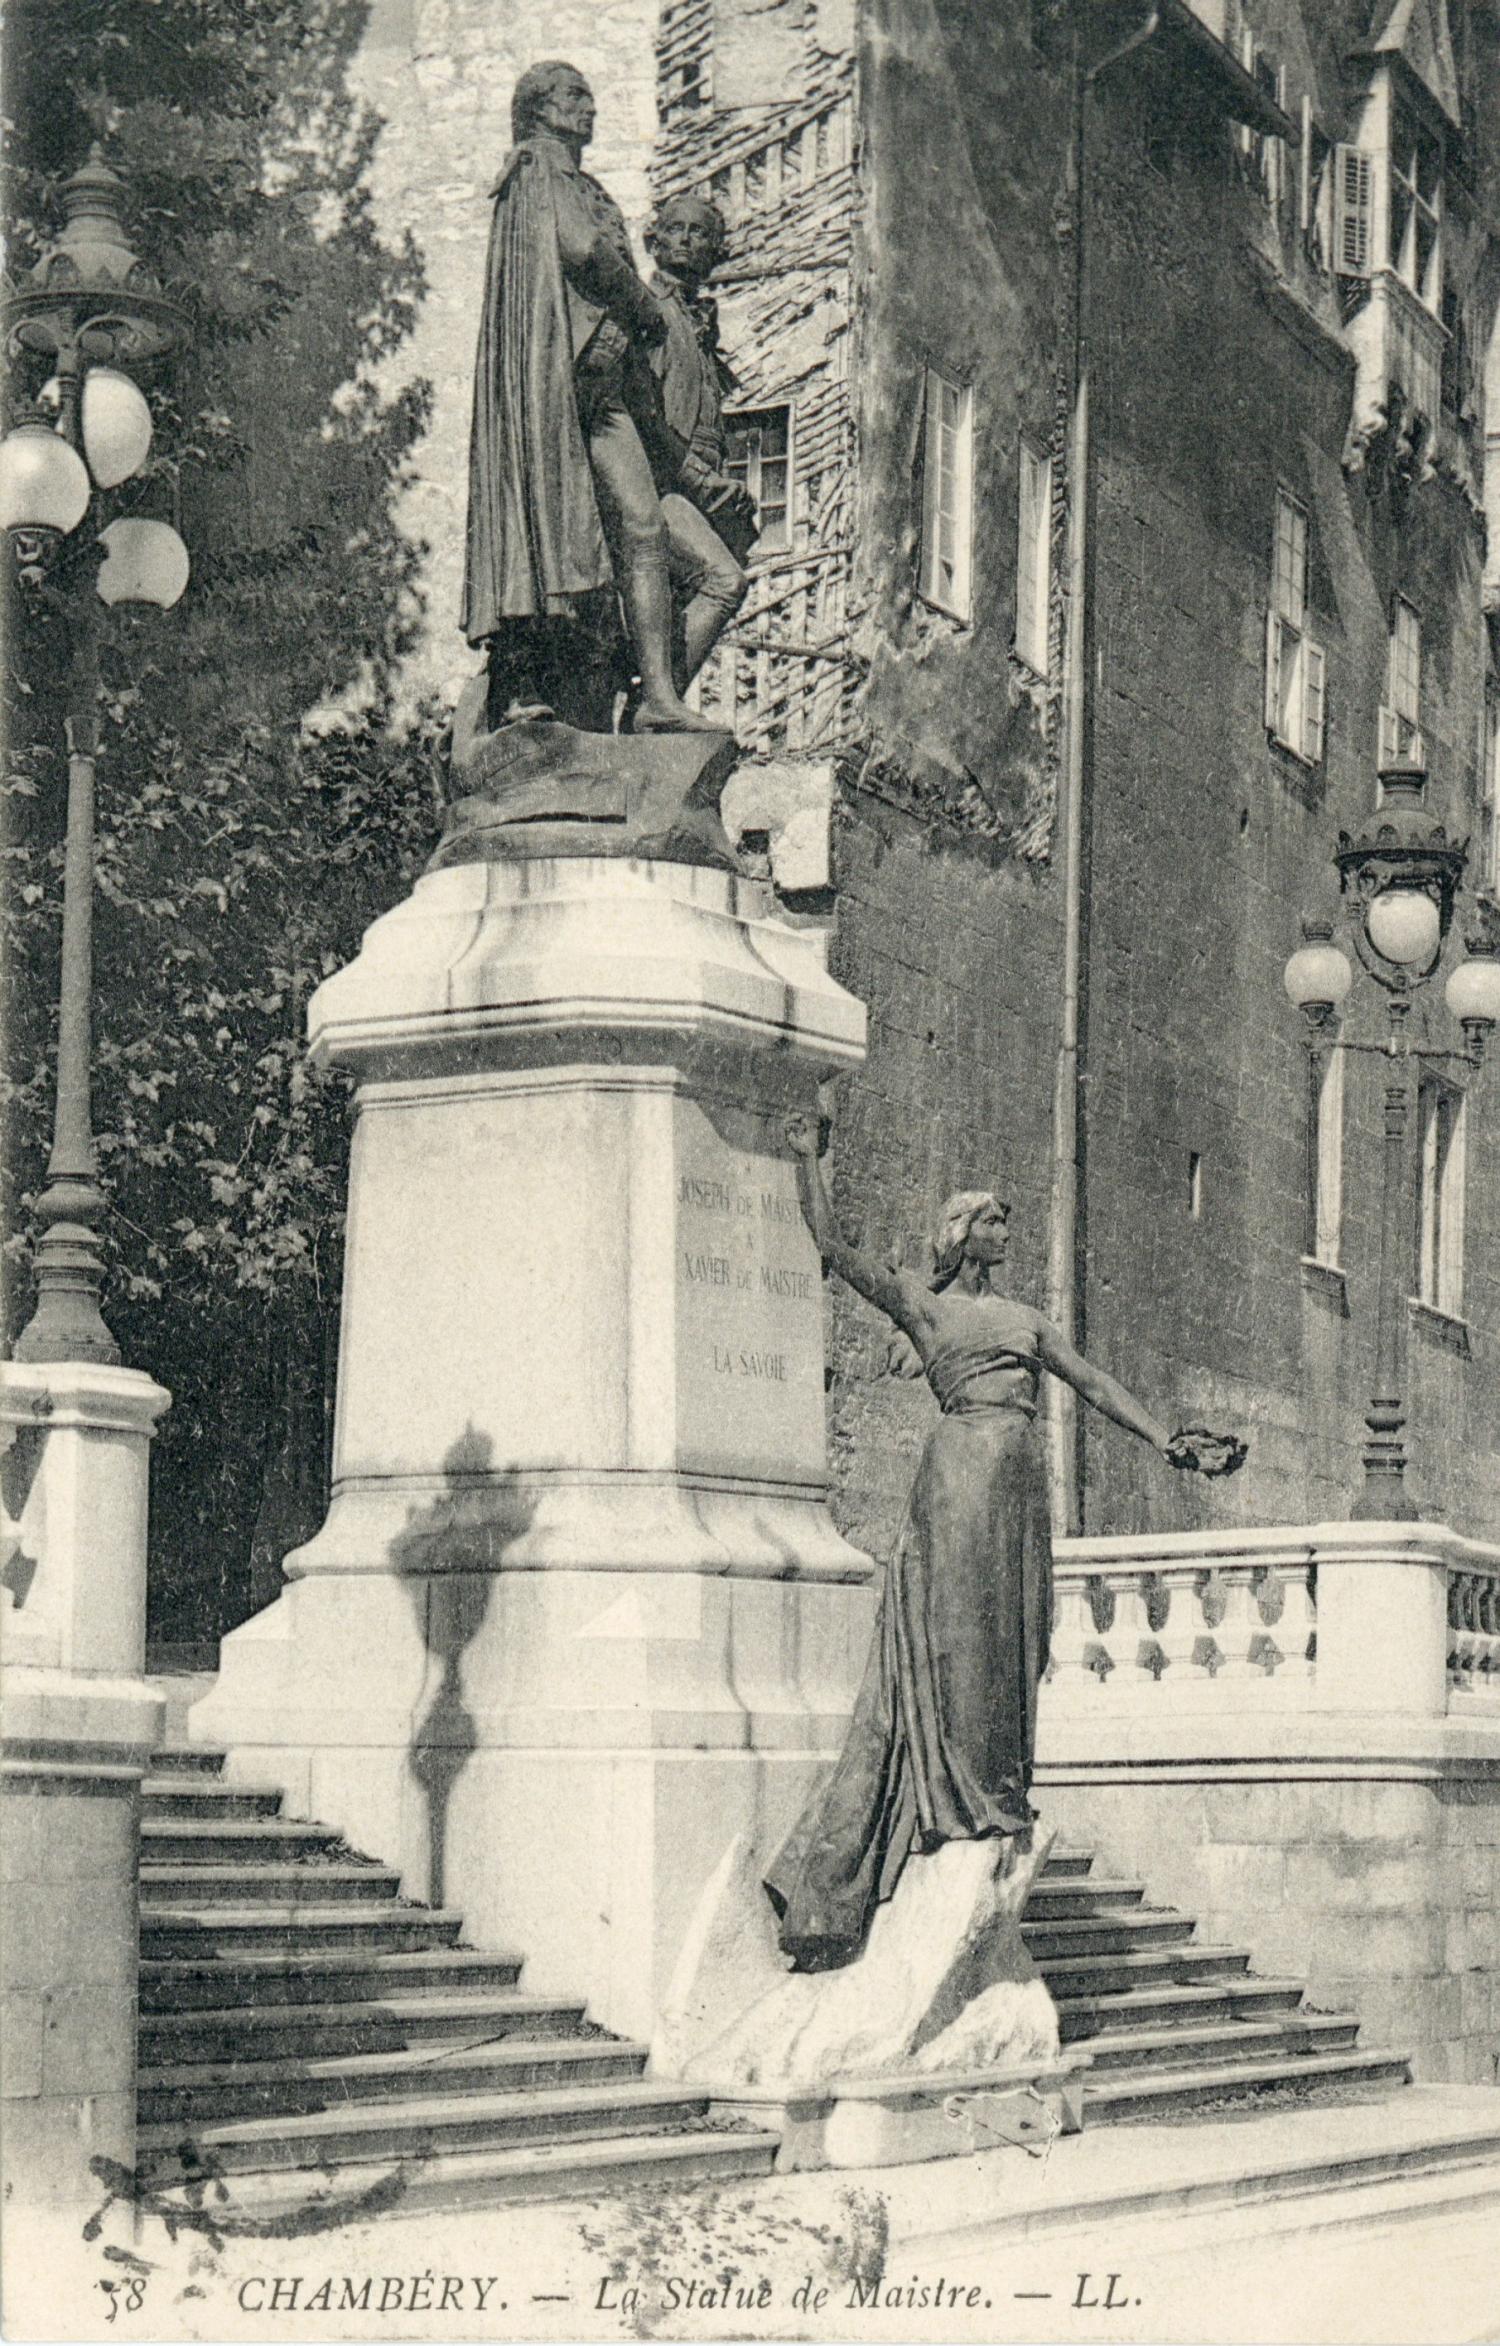 Chambéry. - Le statue de Maistre